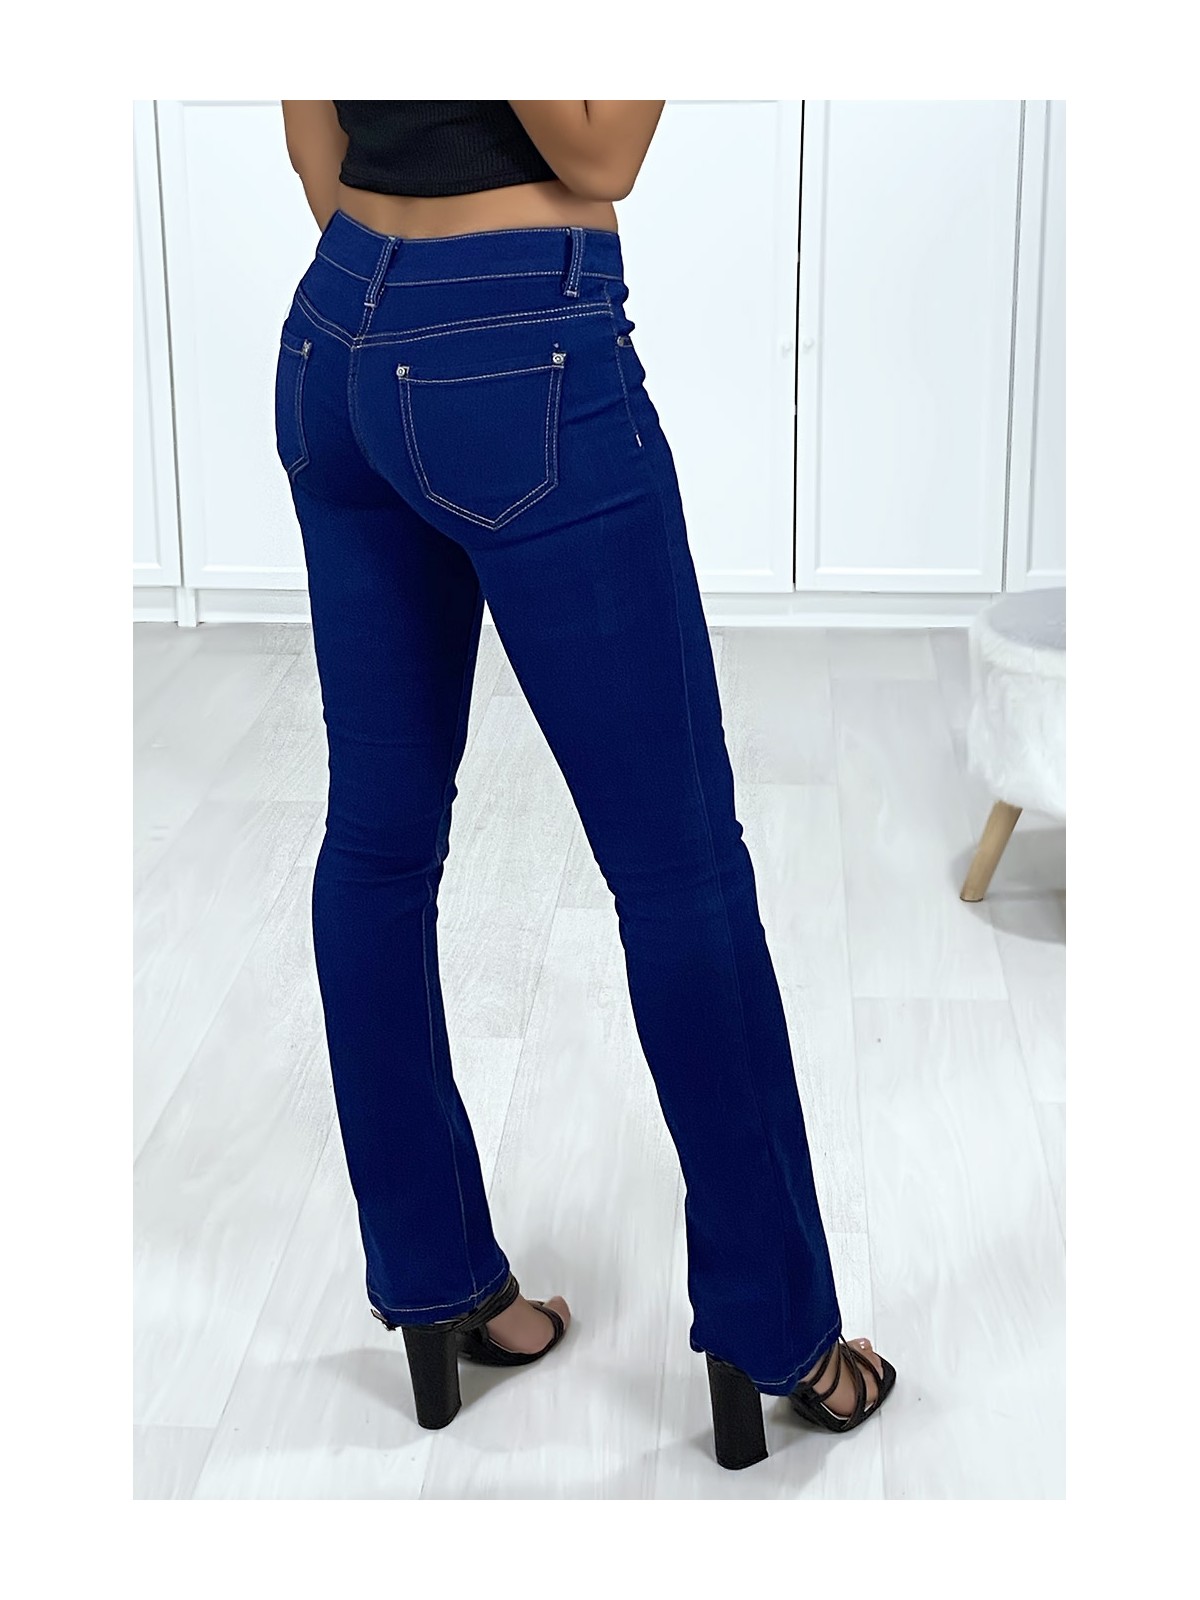 Jeans bleu brute patte d'eph avec 5 poches - 4